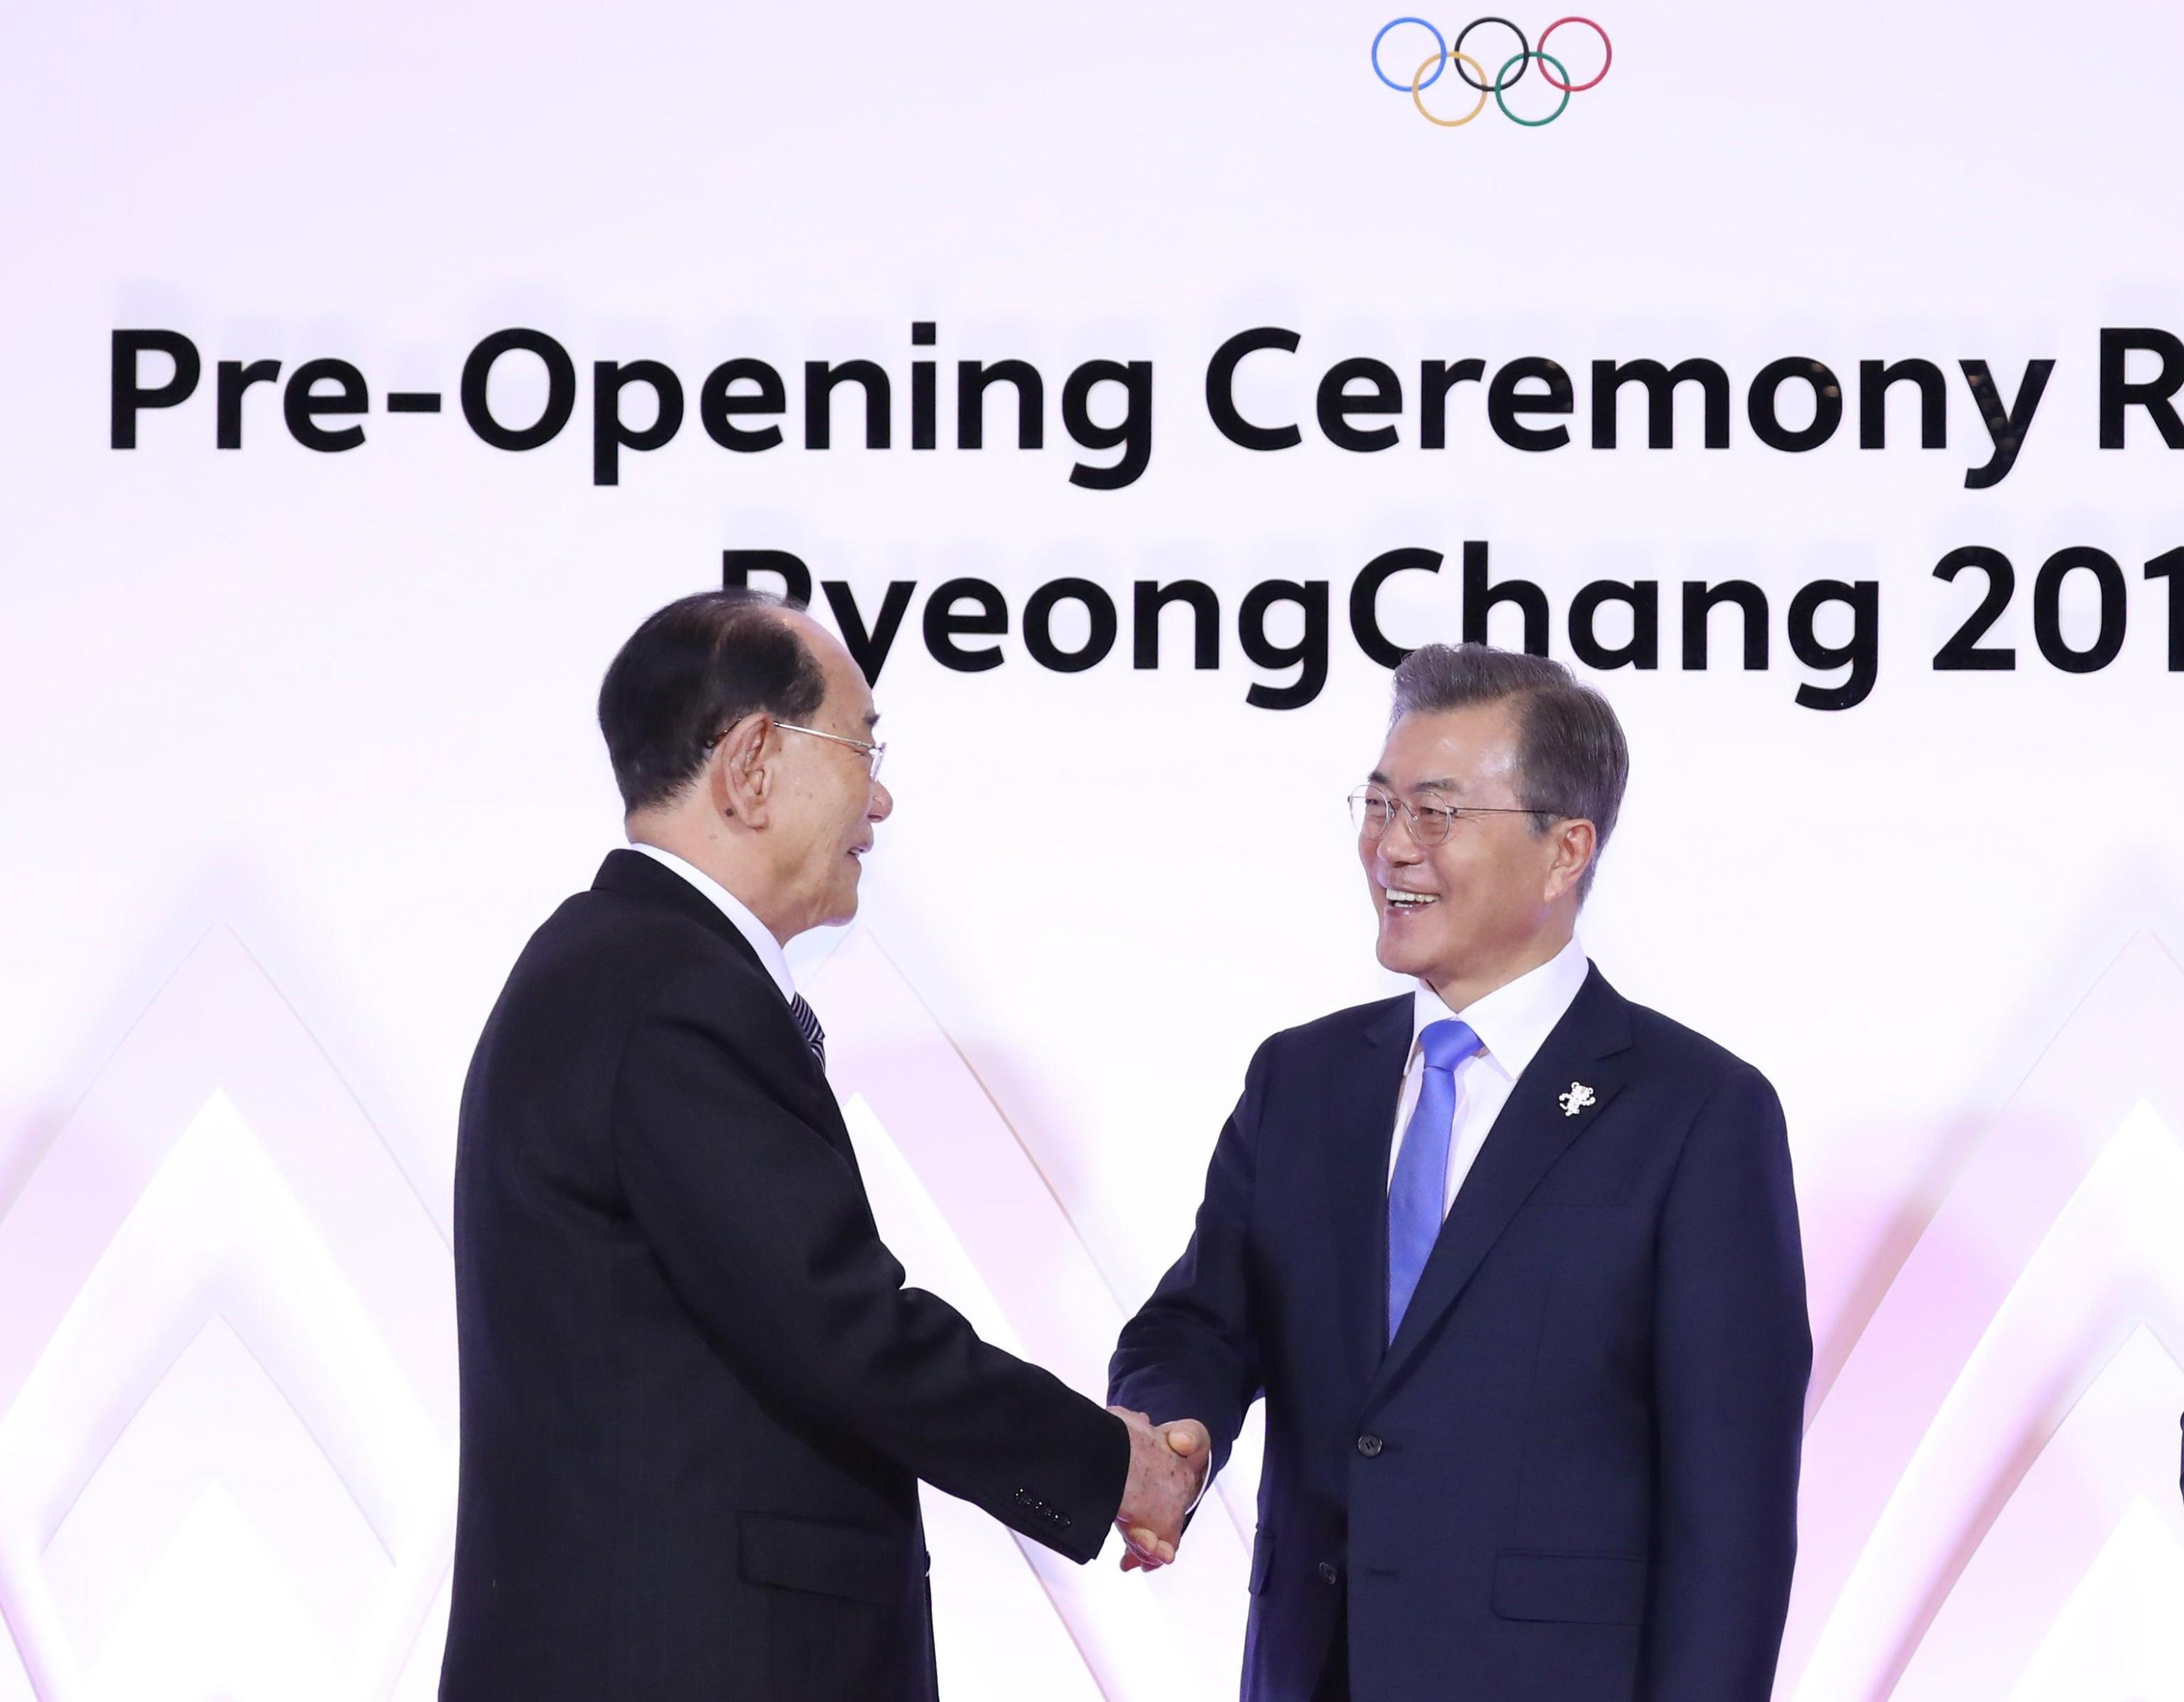 Il presidente coreano Moon Jae-in stringe la mano a Kim Yong-nam durante un ricevimento per i delegati stranieri ai Giochi olimpici invernali di PyeongChang